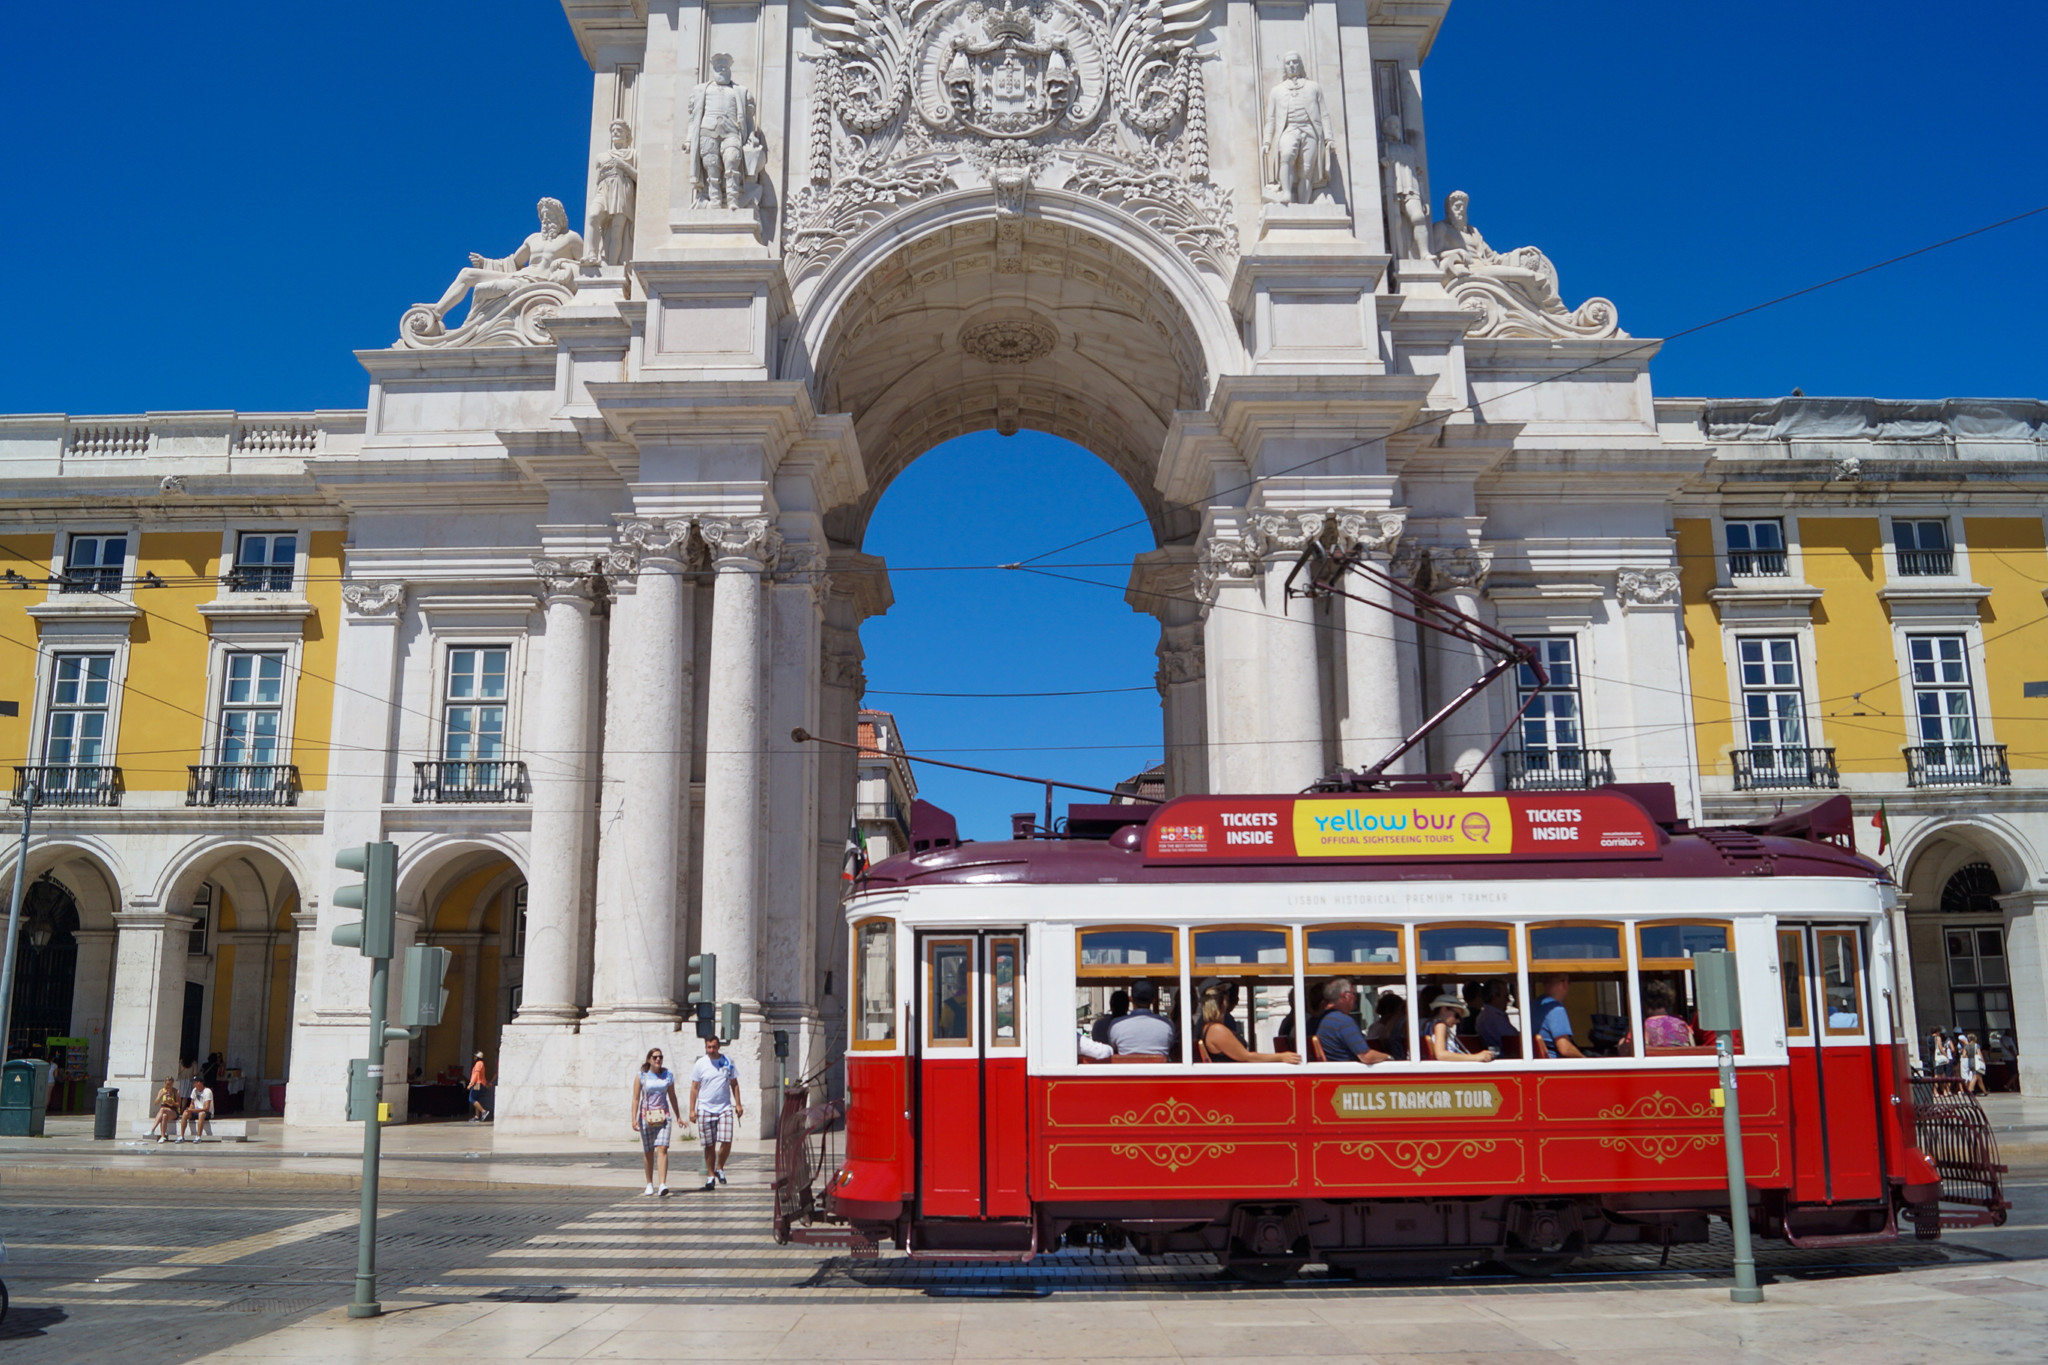 Sehenswürdigkeiten in Lissabon mit der Tram erkunden